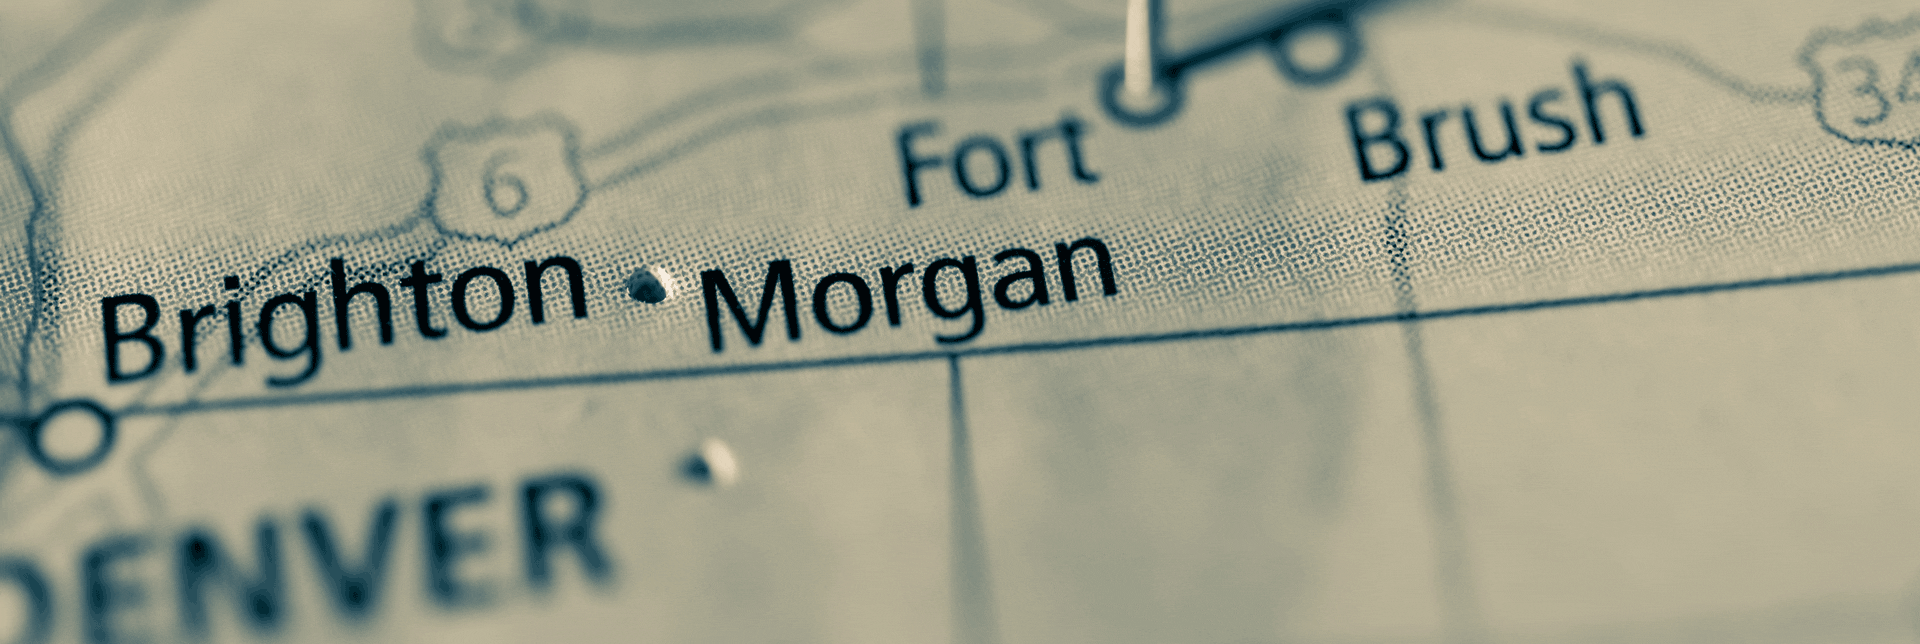 fort-morgan-CO-1920x644